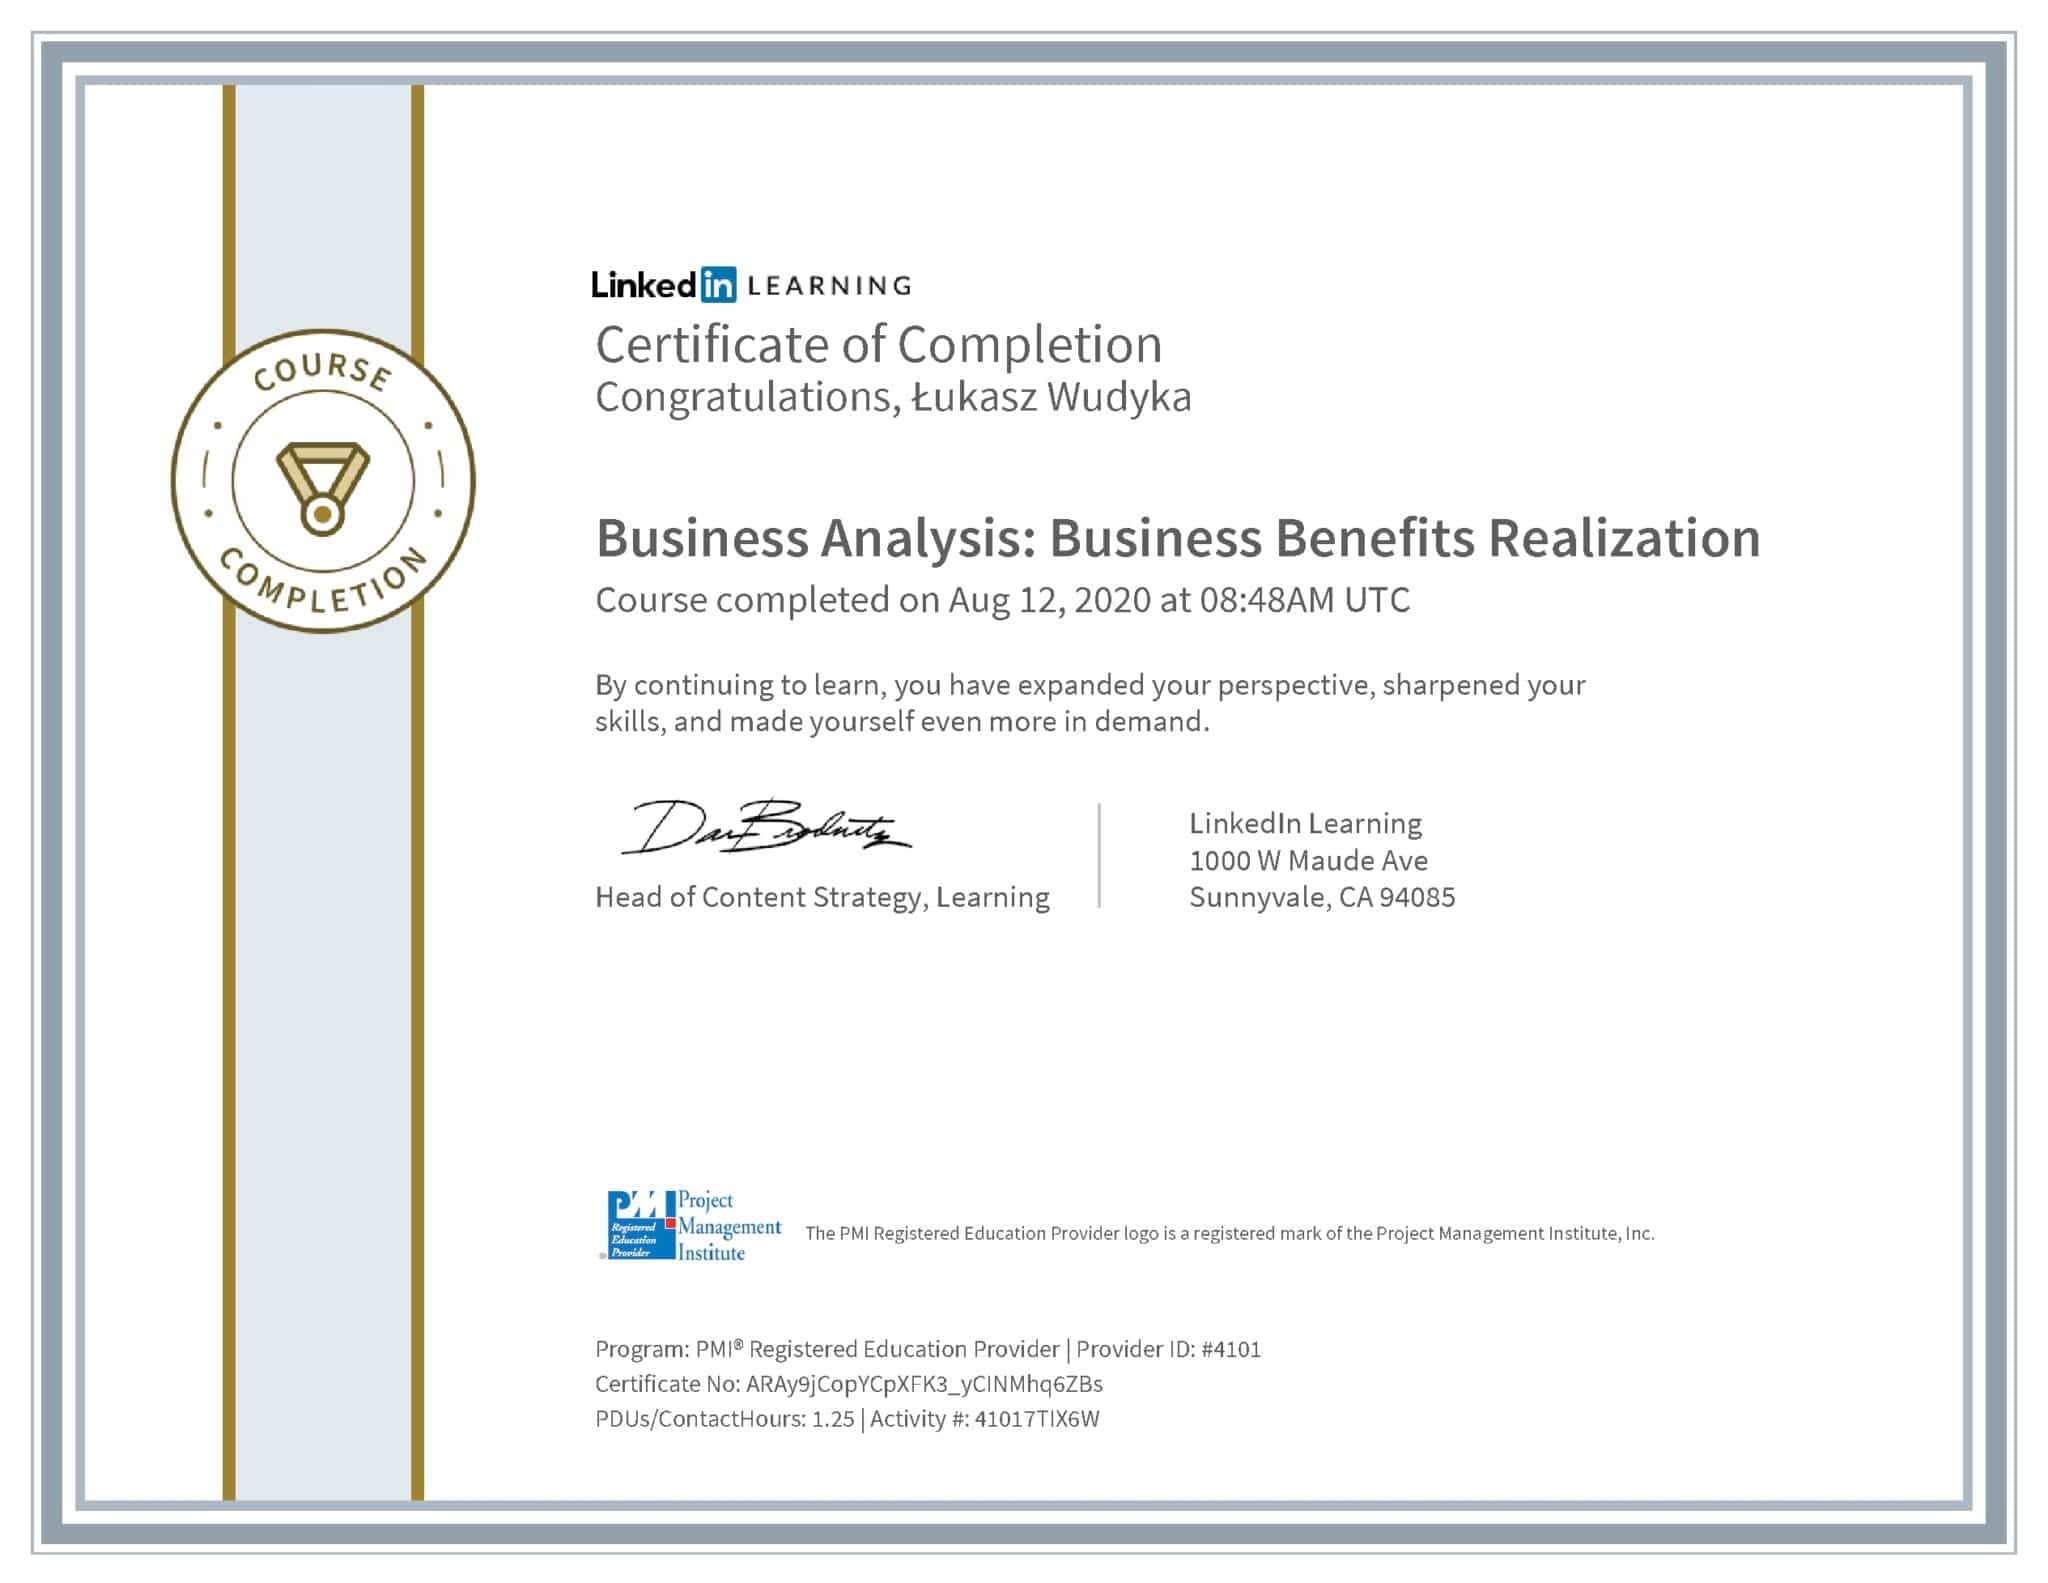 Łukasz Wudyka certyfikat LinkedIn Business Analysis: Business Benefits Realization PMI